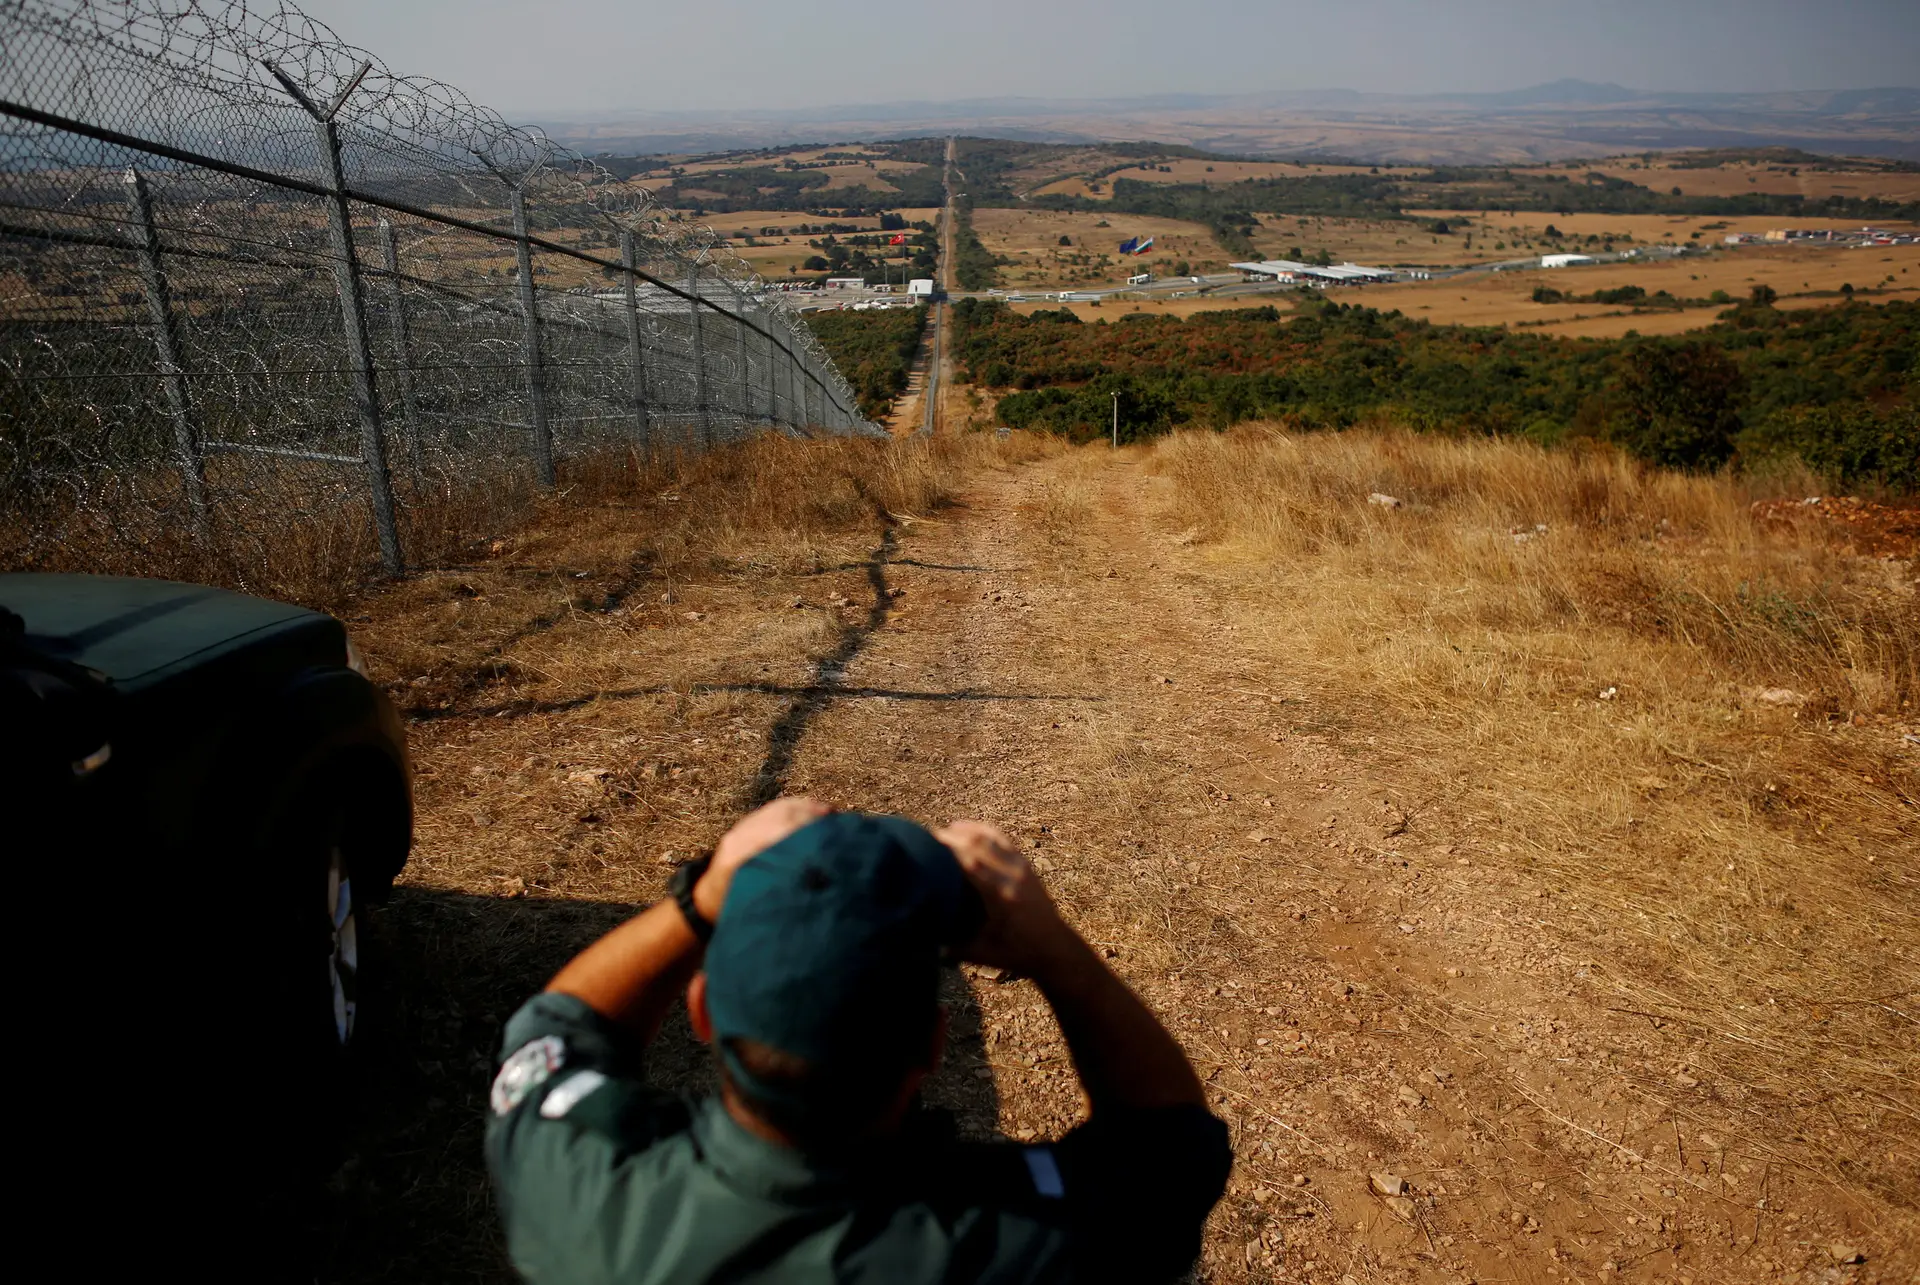 Bulgária nega violência contra migrantes na fronteira com a Turquia